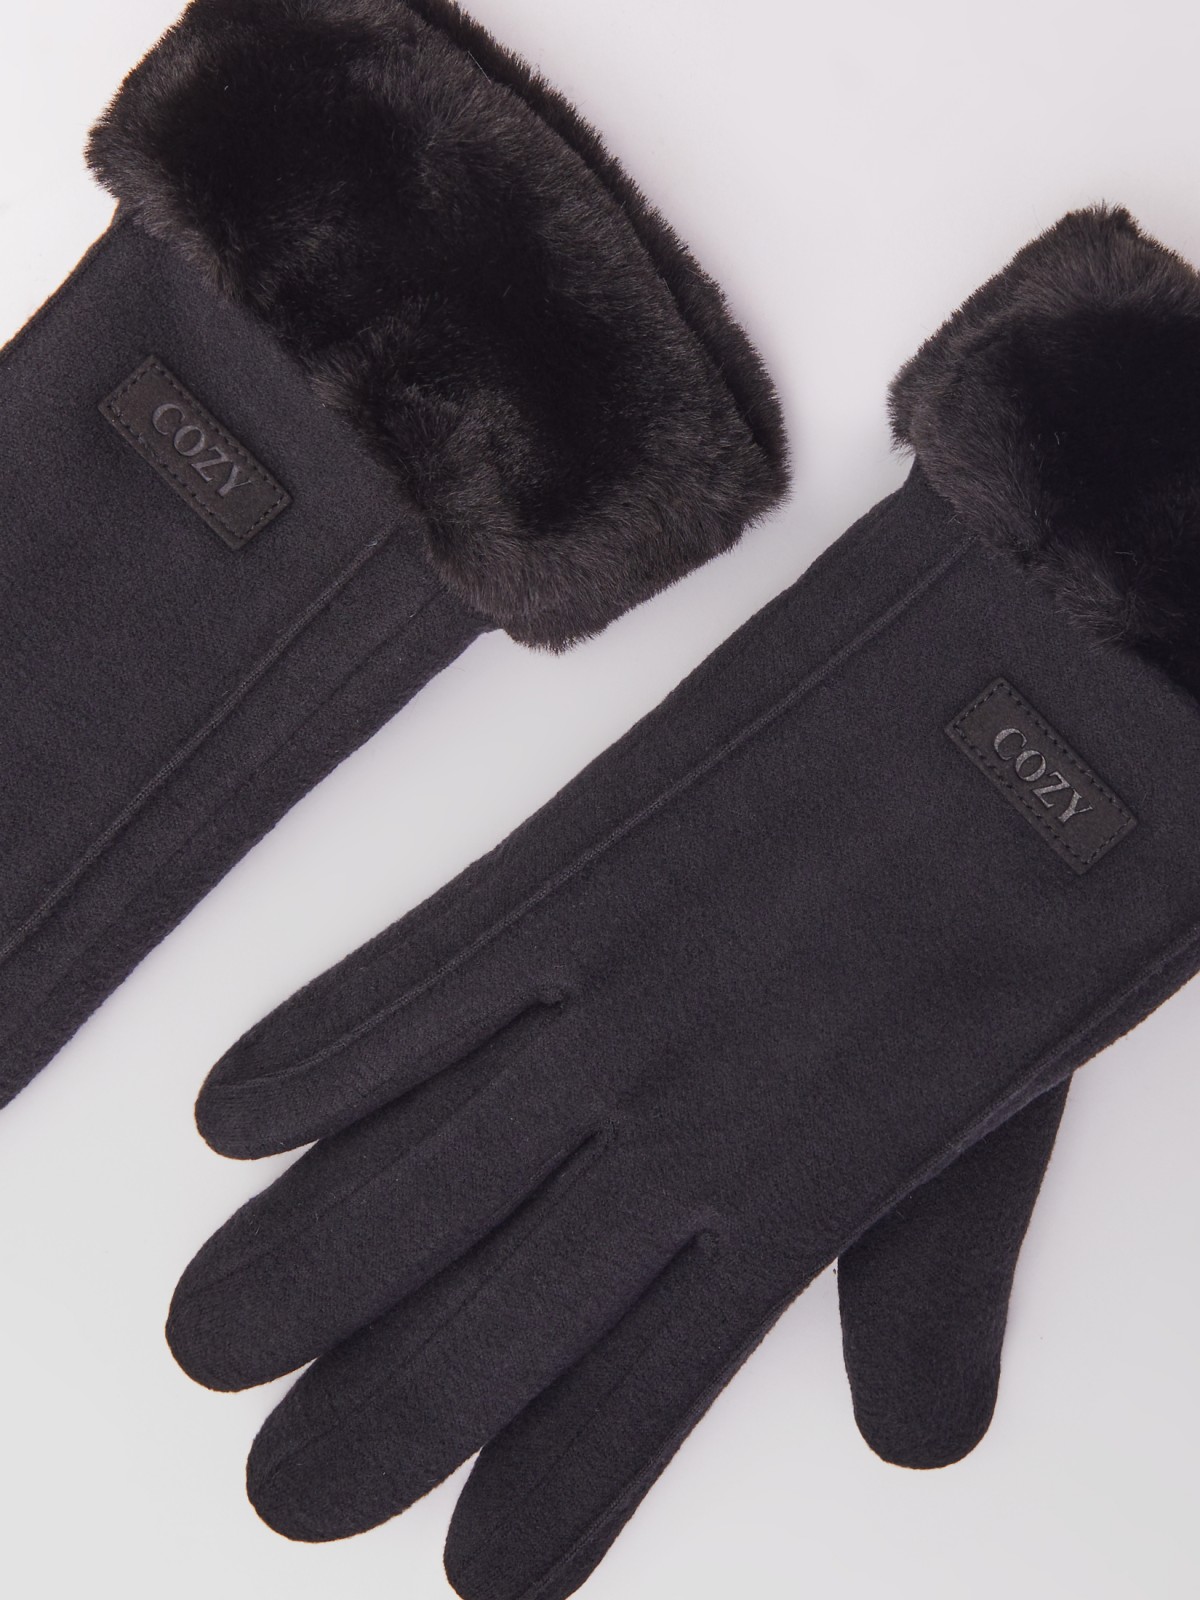 Тёплые перчатки с опушкой из экомеха и начёсом zolla 023429659025, цвет черный, размер S - фото 2